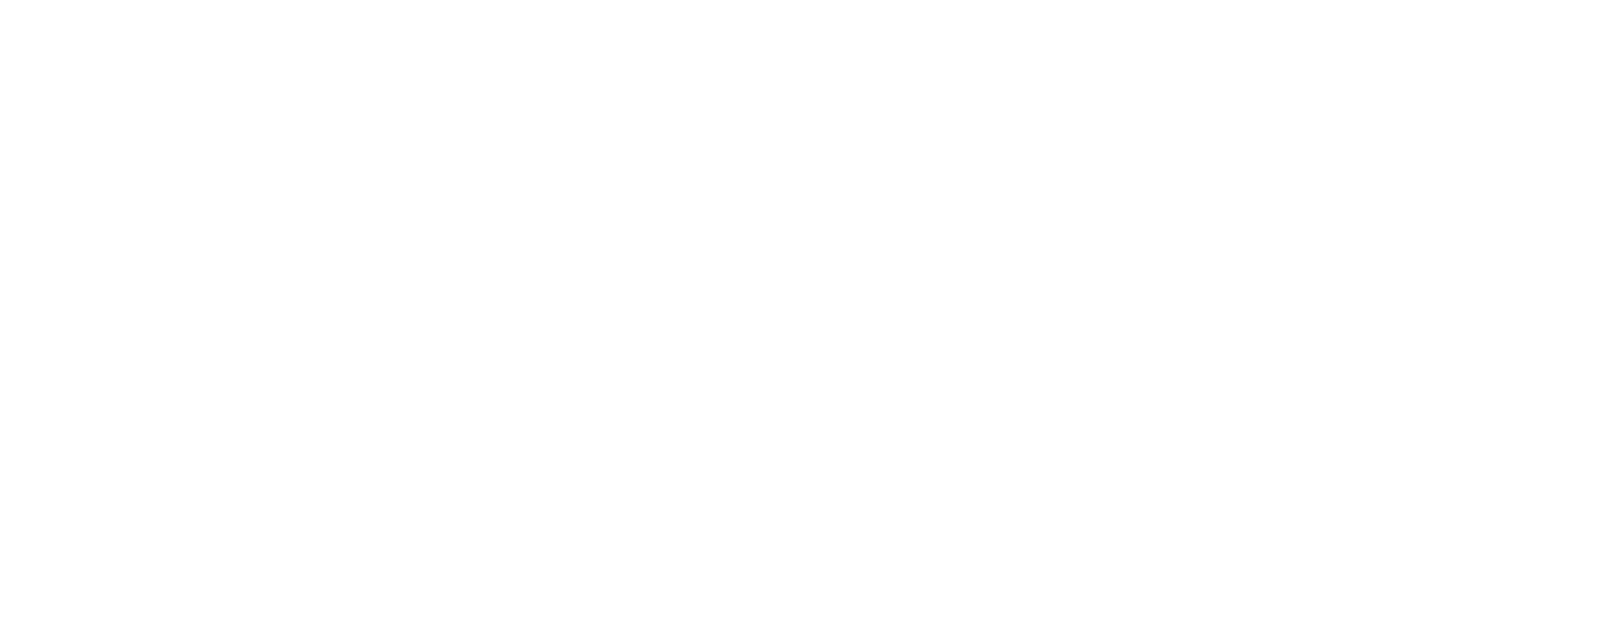 LEG Immobilien
 logo pour fonds sombres (PNG transparent)